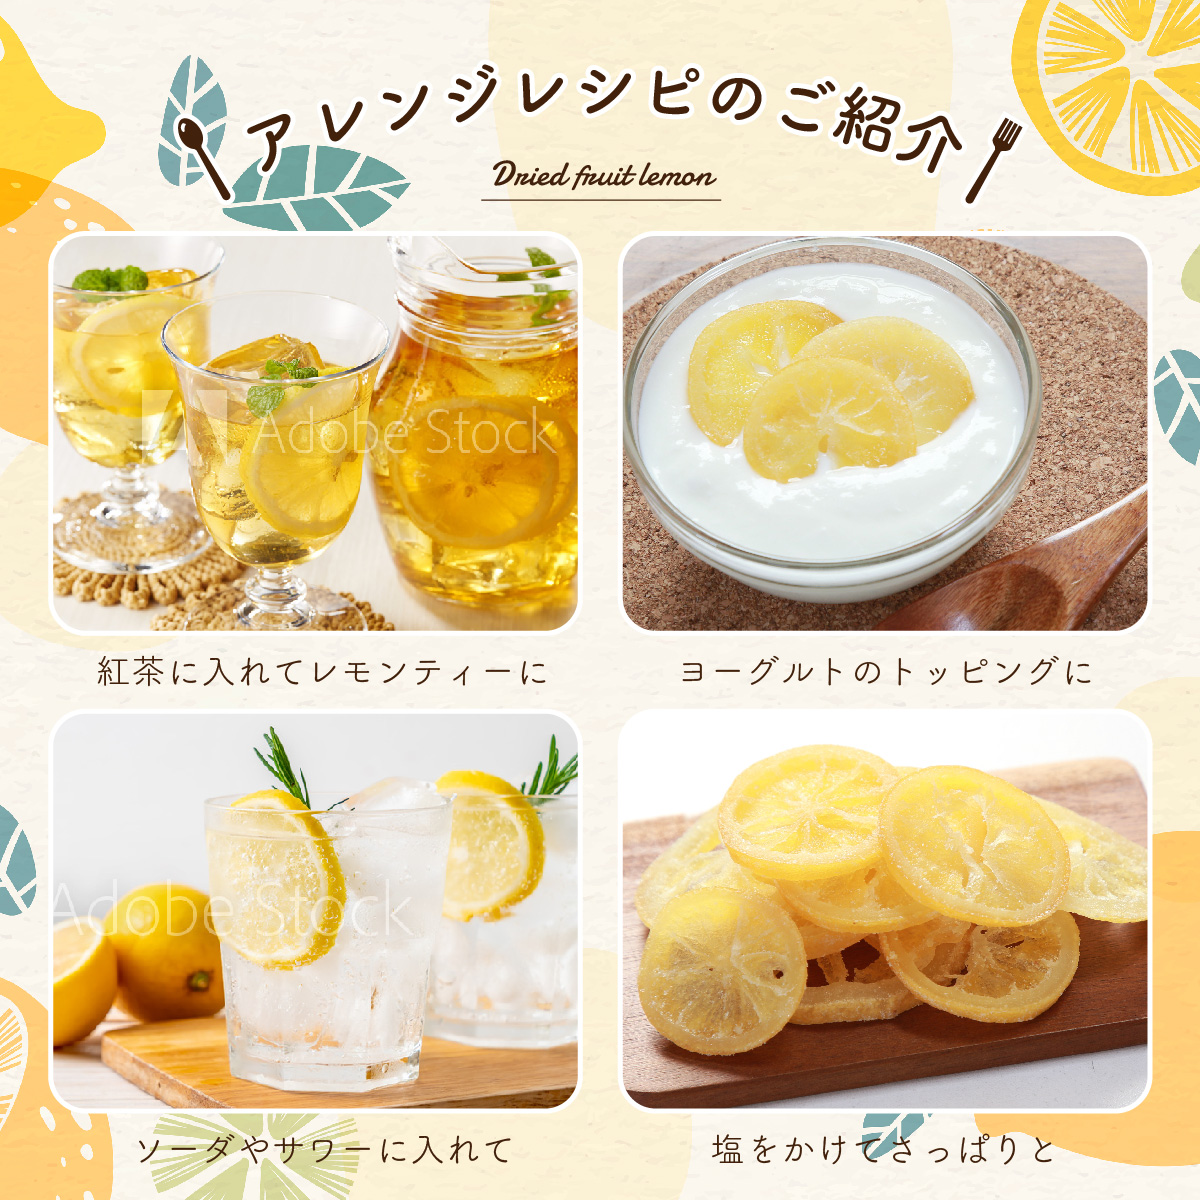 ドライフルーツ 国産 輪切り レモン 500g 特長8